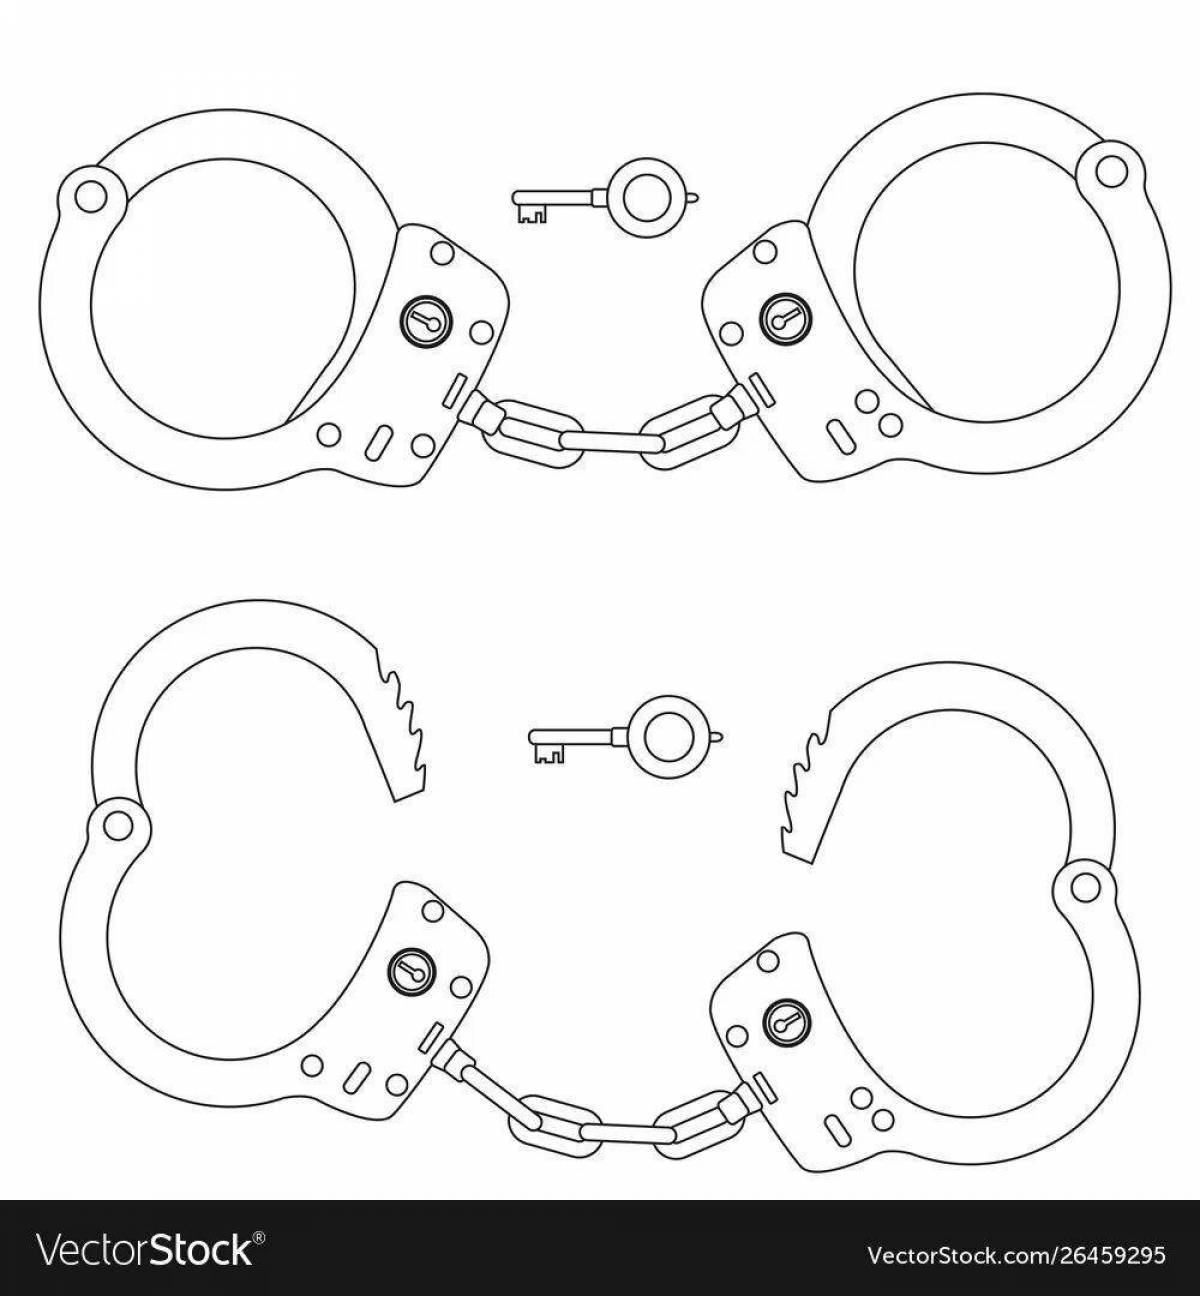 Fun coloring handcuffs